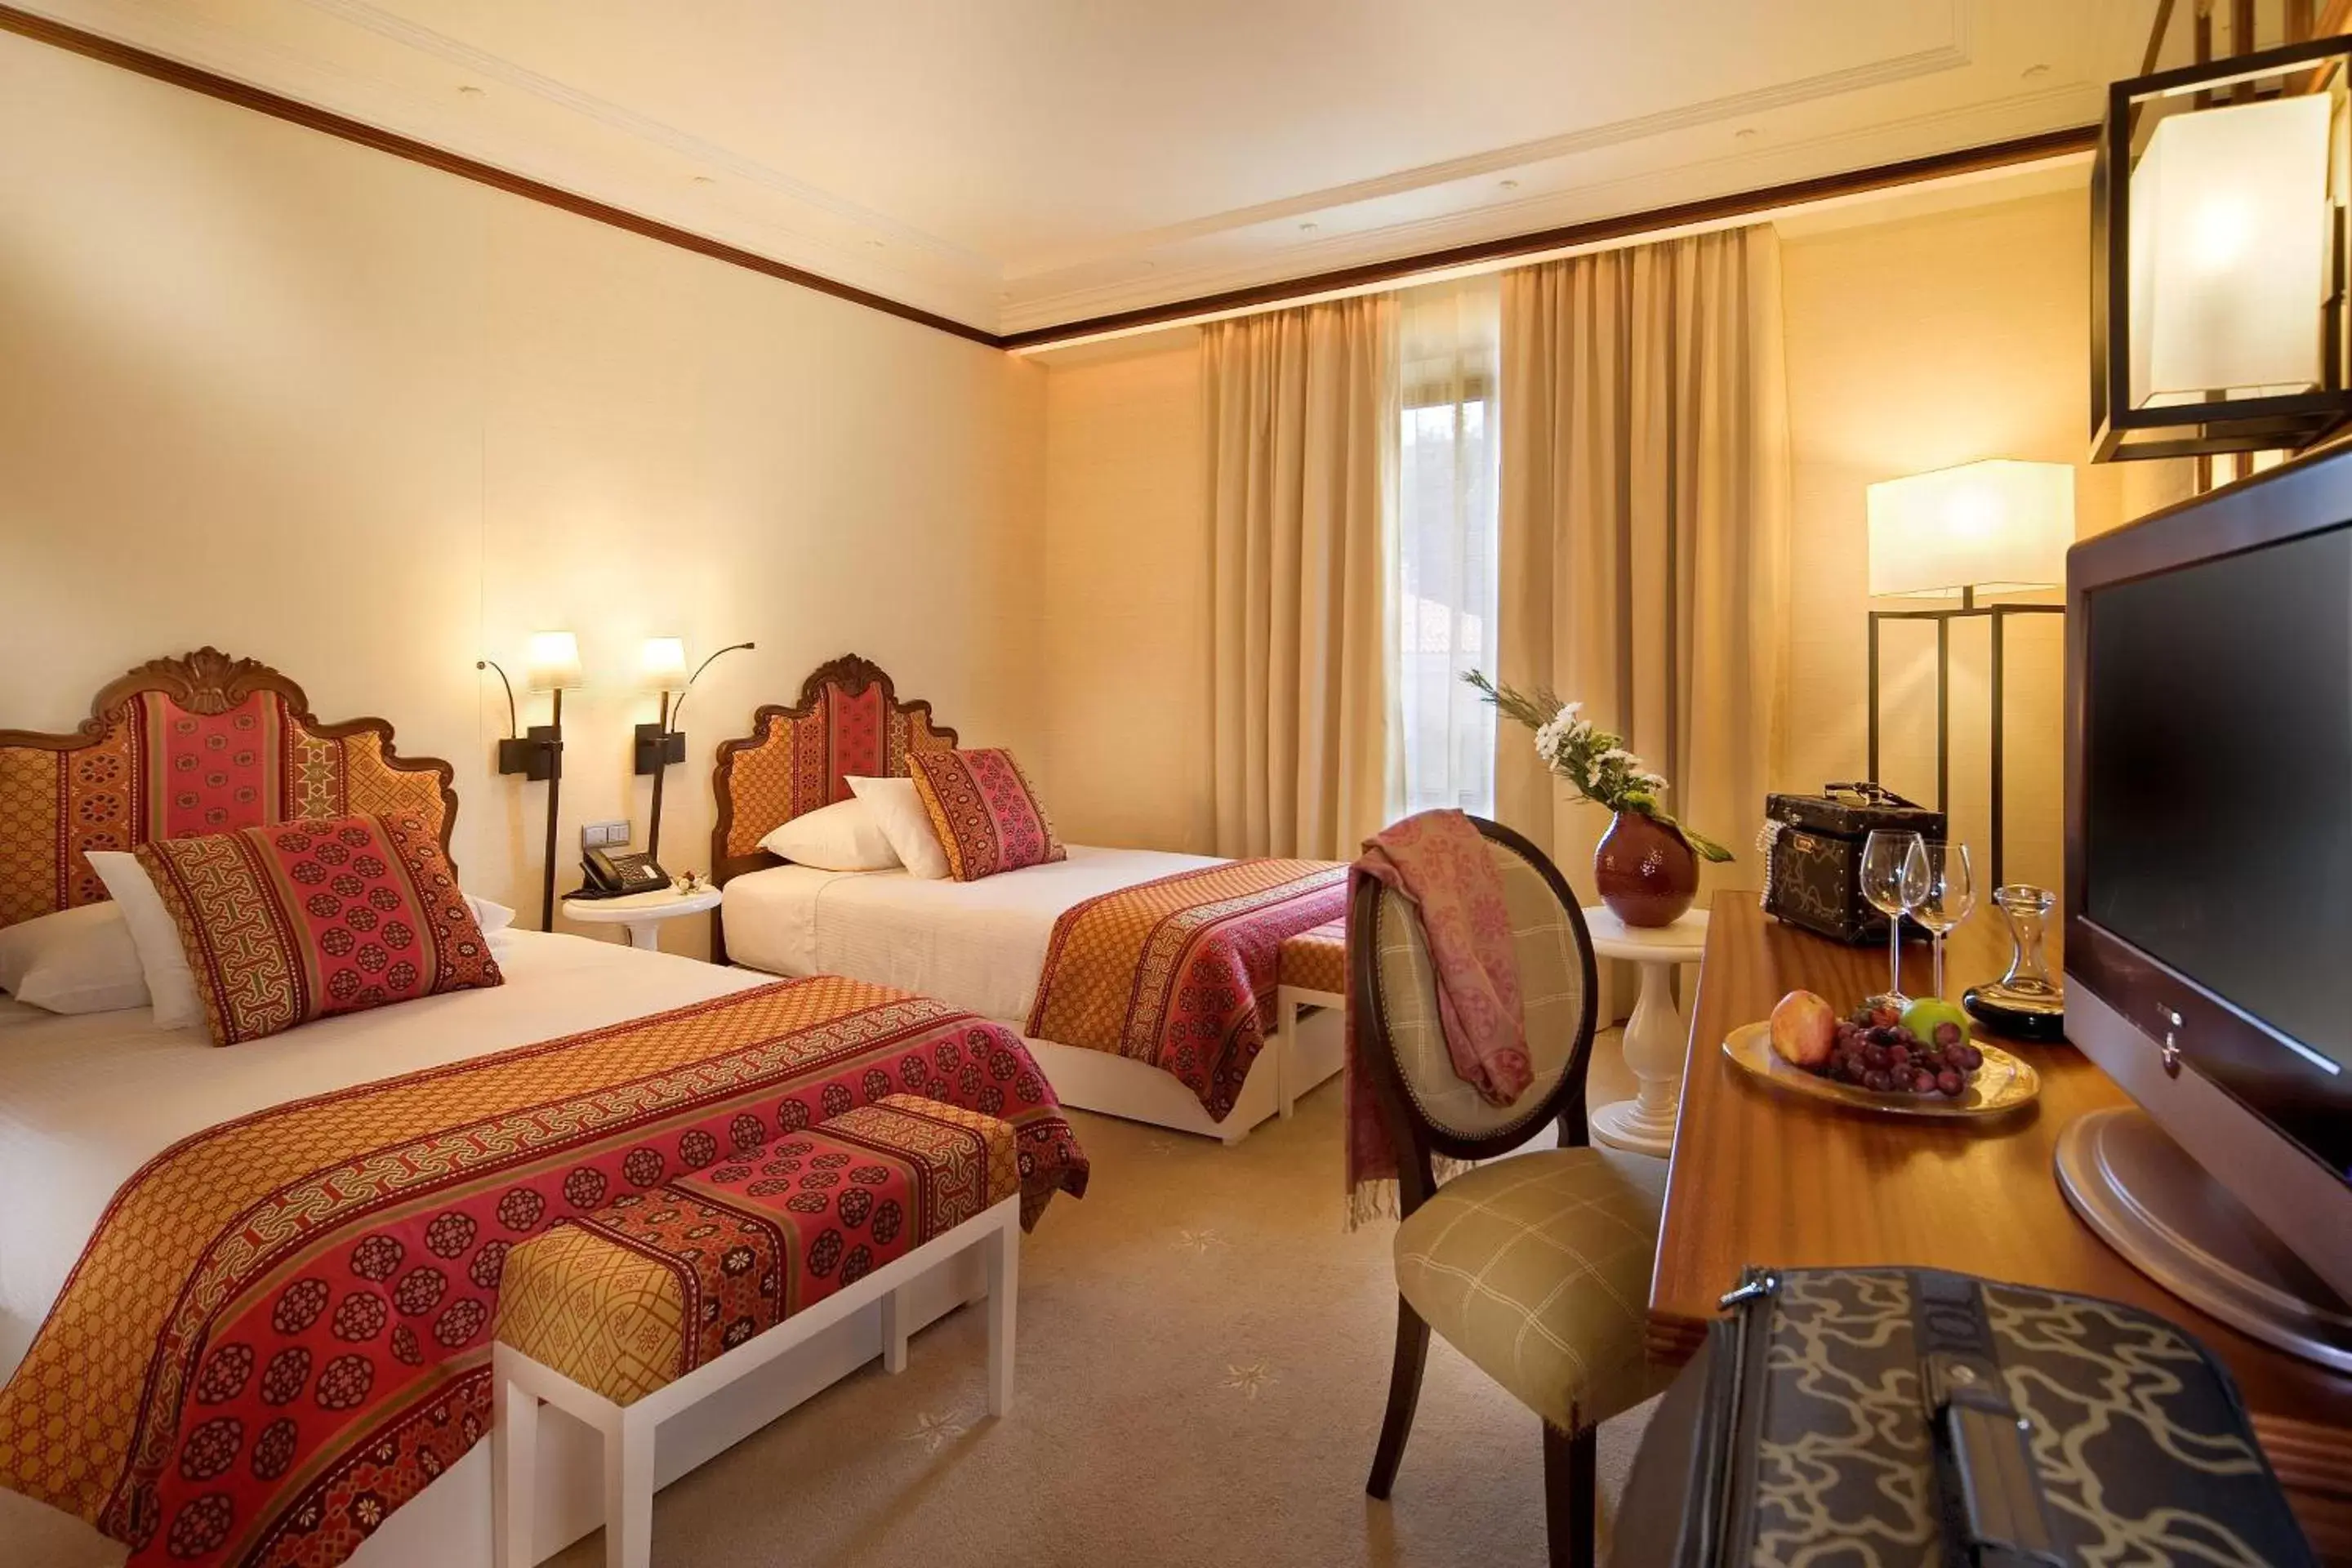 Bedroom in Grande Real Villa Itália Hotel & Spa